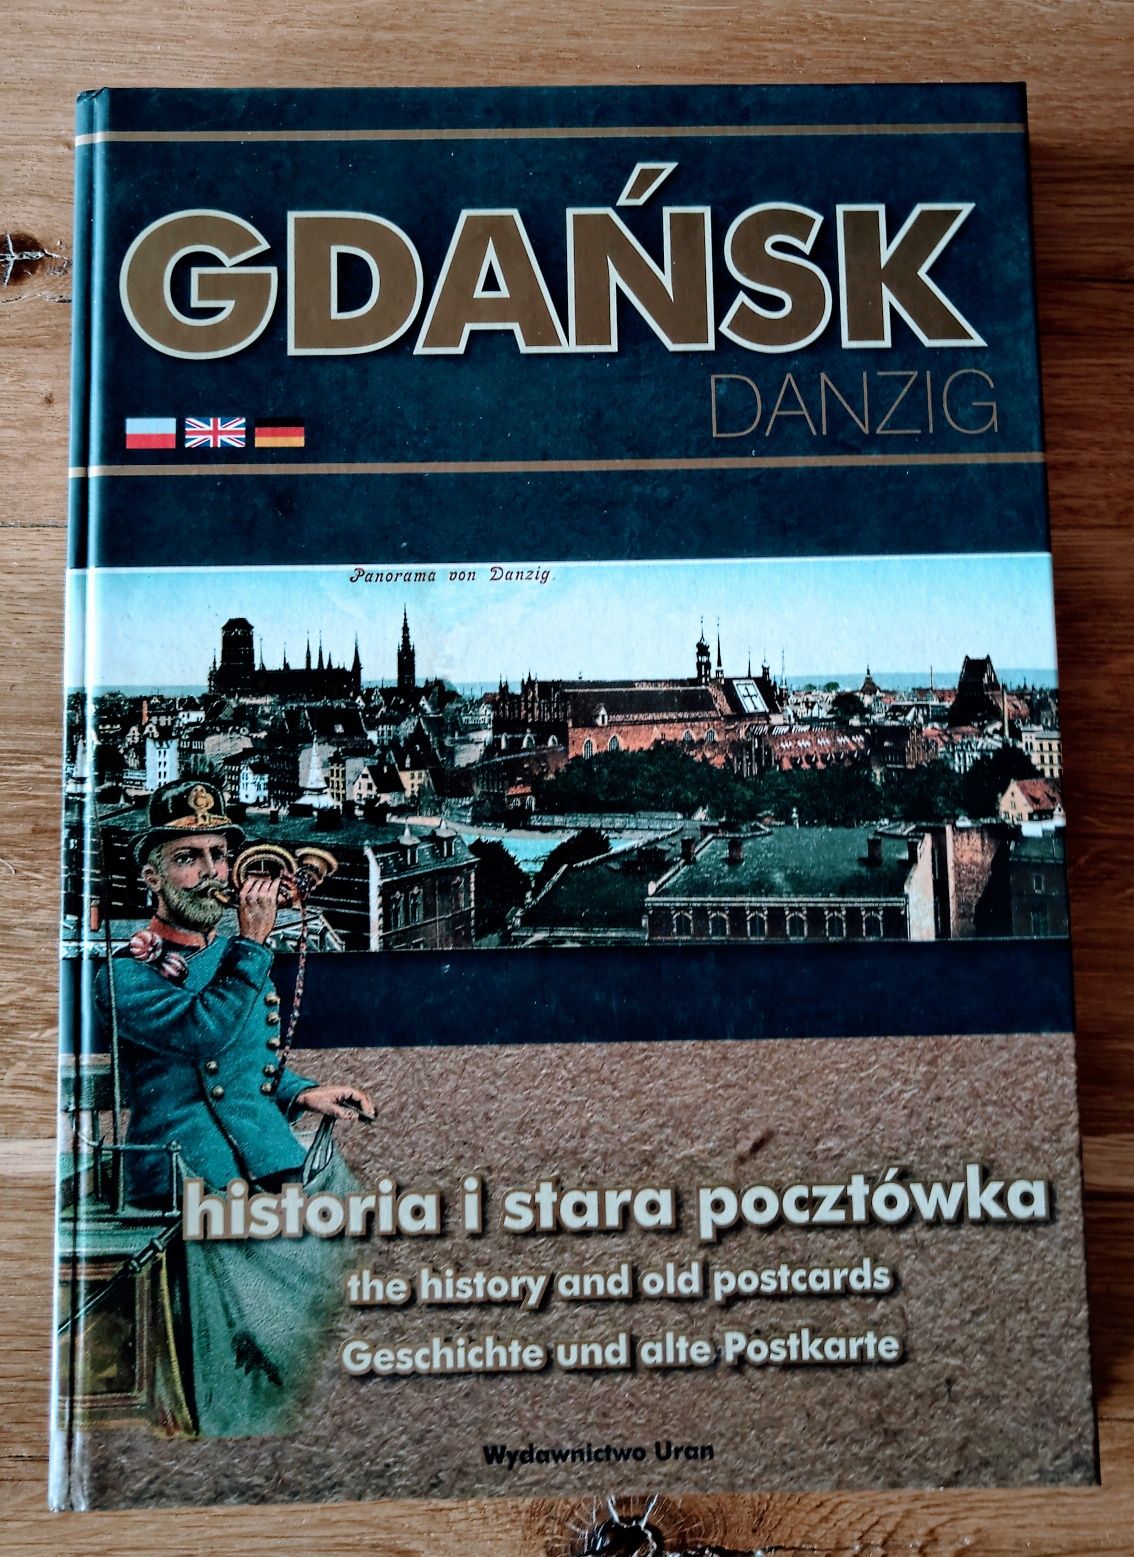 Album Gdańsk historia i stara pocztowka, jak Nowy, Byl sobie Gdansk